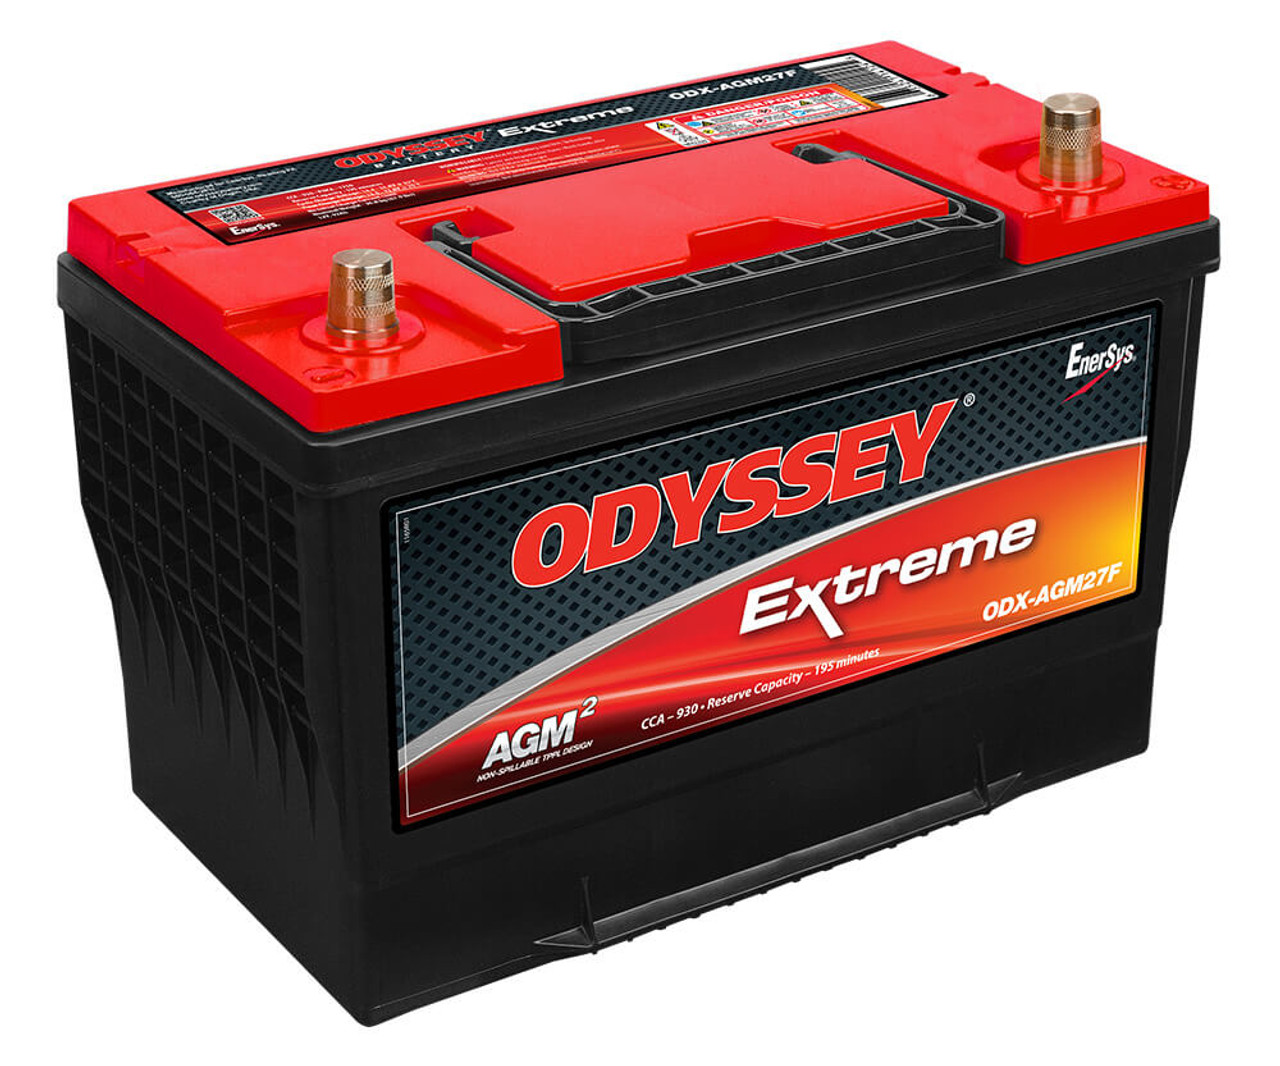 ODYSSEY Extreme Battery ODX-AGM27F (NSB-AGM27F)